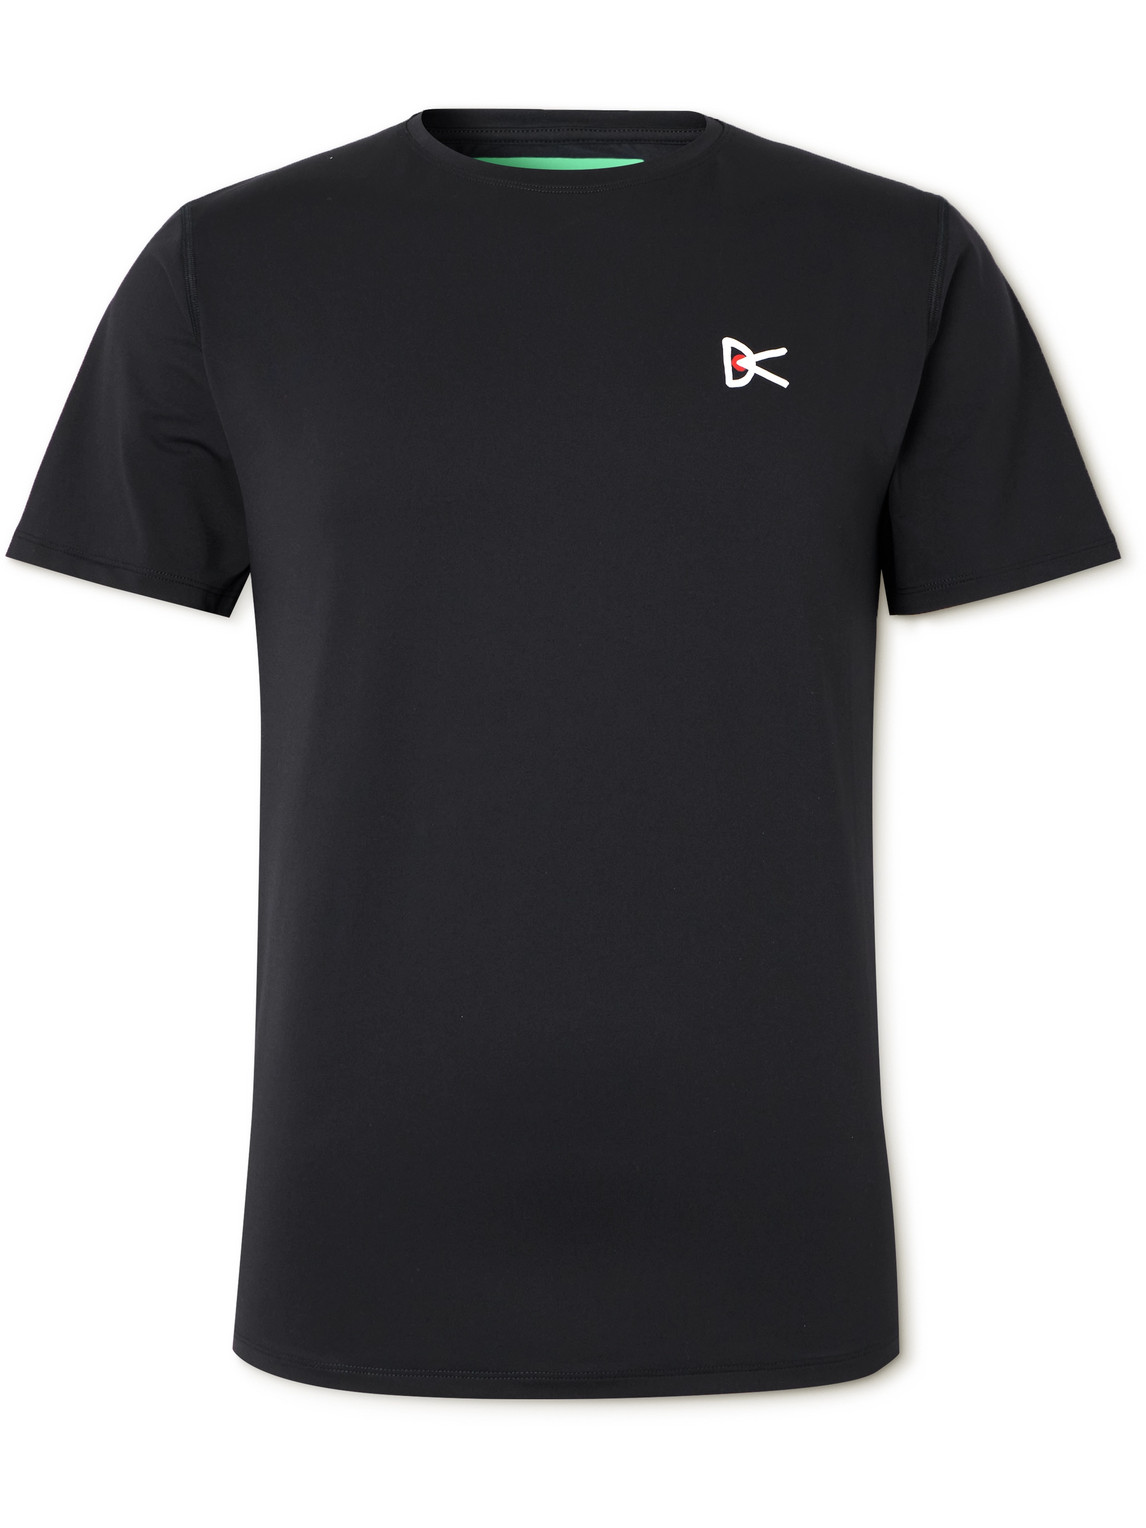 DISTRICT VISION - Logo-Print Stretch-Jersey Running T-Shirt - Men - Black - S von DISTRICT VISION